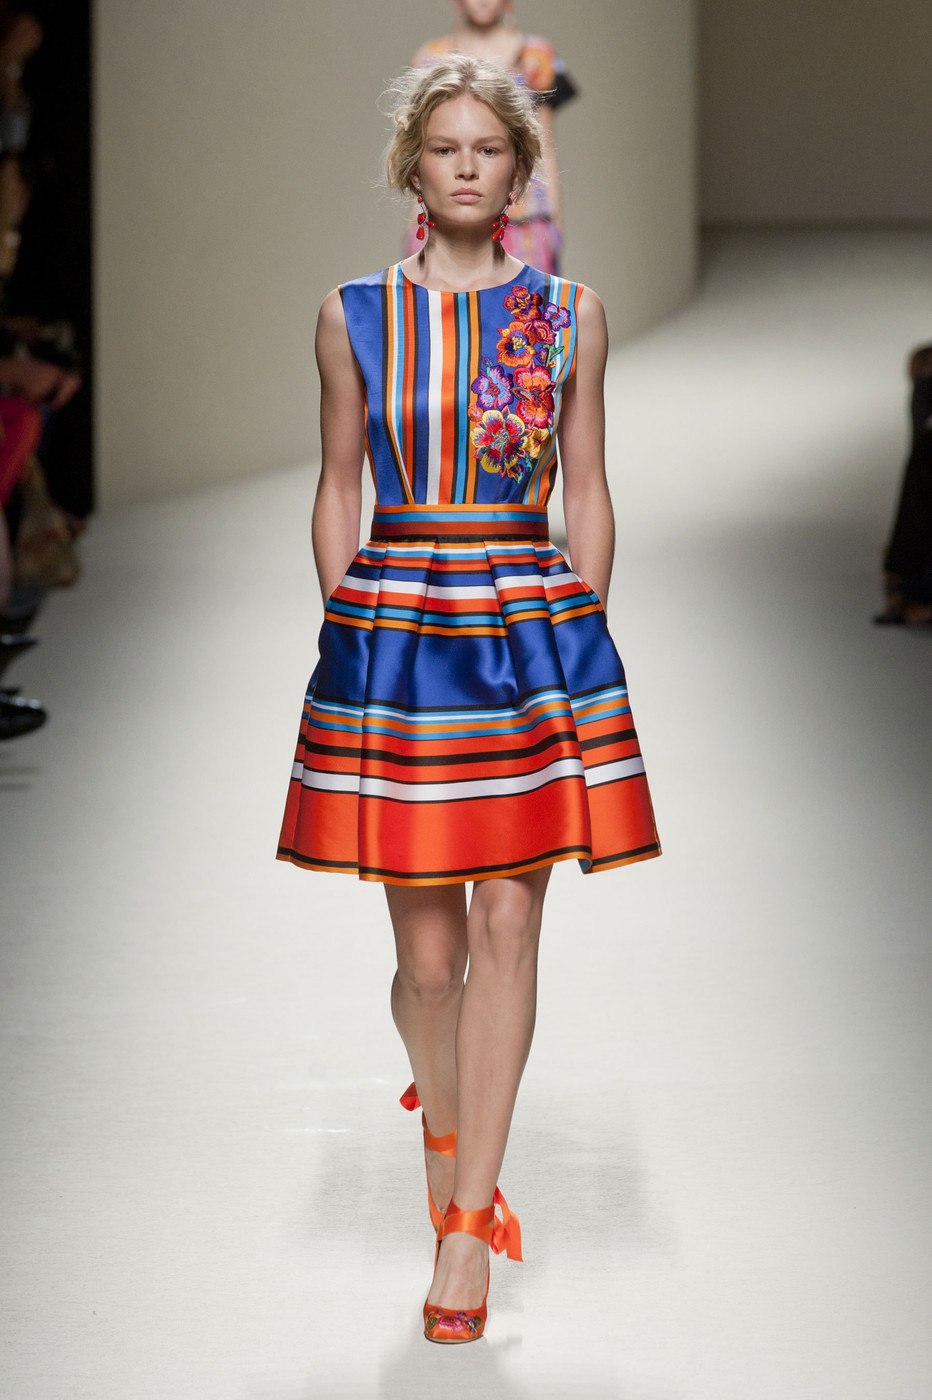 Модные яркие платья: 70 стильных образов в насыщенных тонах